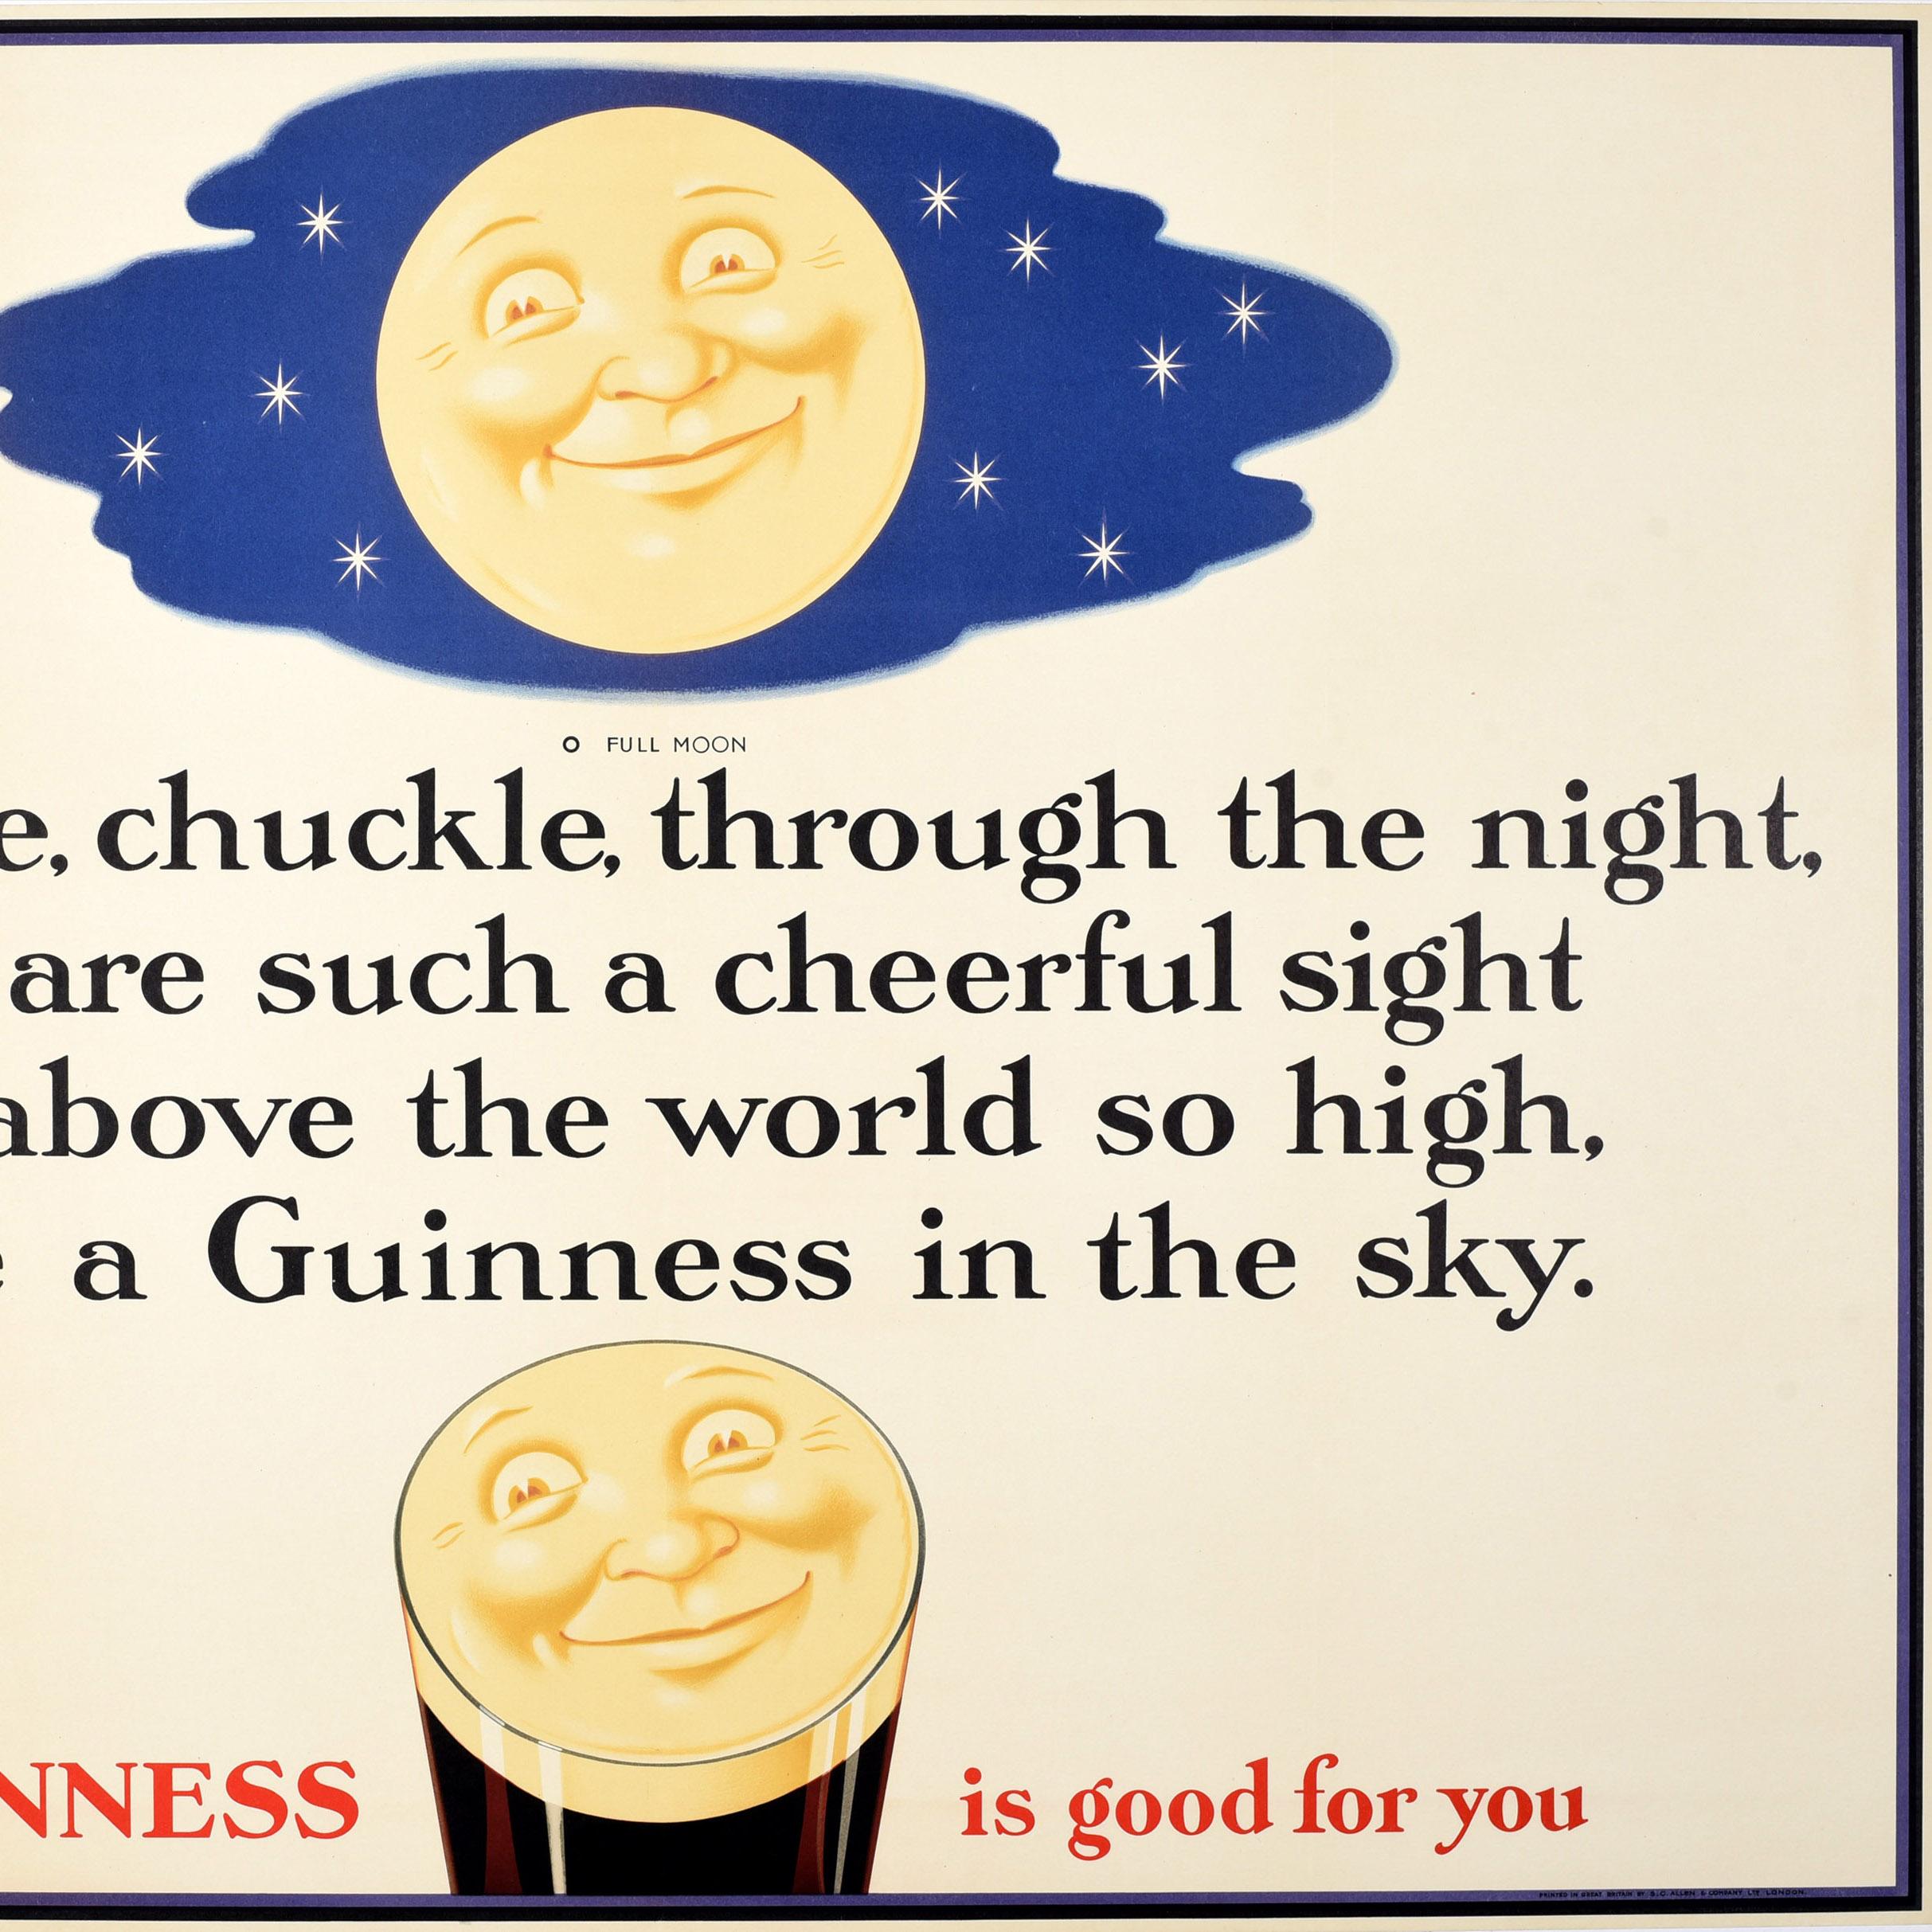 Originales Vintage-Getränke-Werbeplakat - Guinness is Good for You - mit einem lustigen und farbenfrohen Bild im Cartoon-Stil des ikonischen lächelnden Guinness-Gesichts, das sich in der Spitze eines Pint-Glases spiegelt, mit einem lächelnden Mond